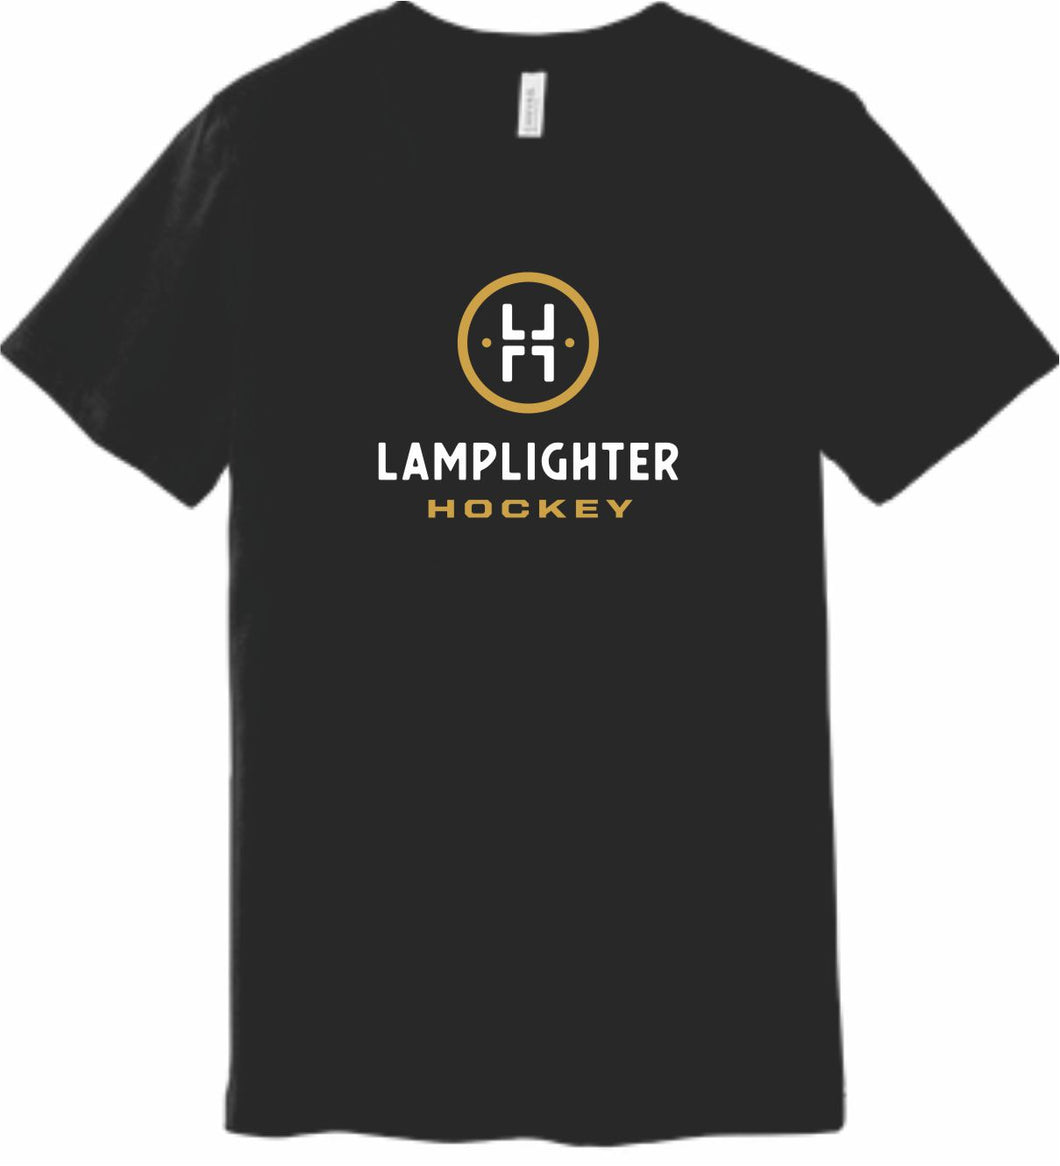 Lamplighter Hockey Black T-Shirt w/ Logo in Gold